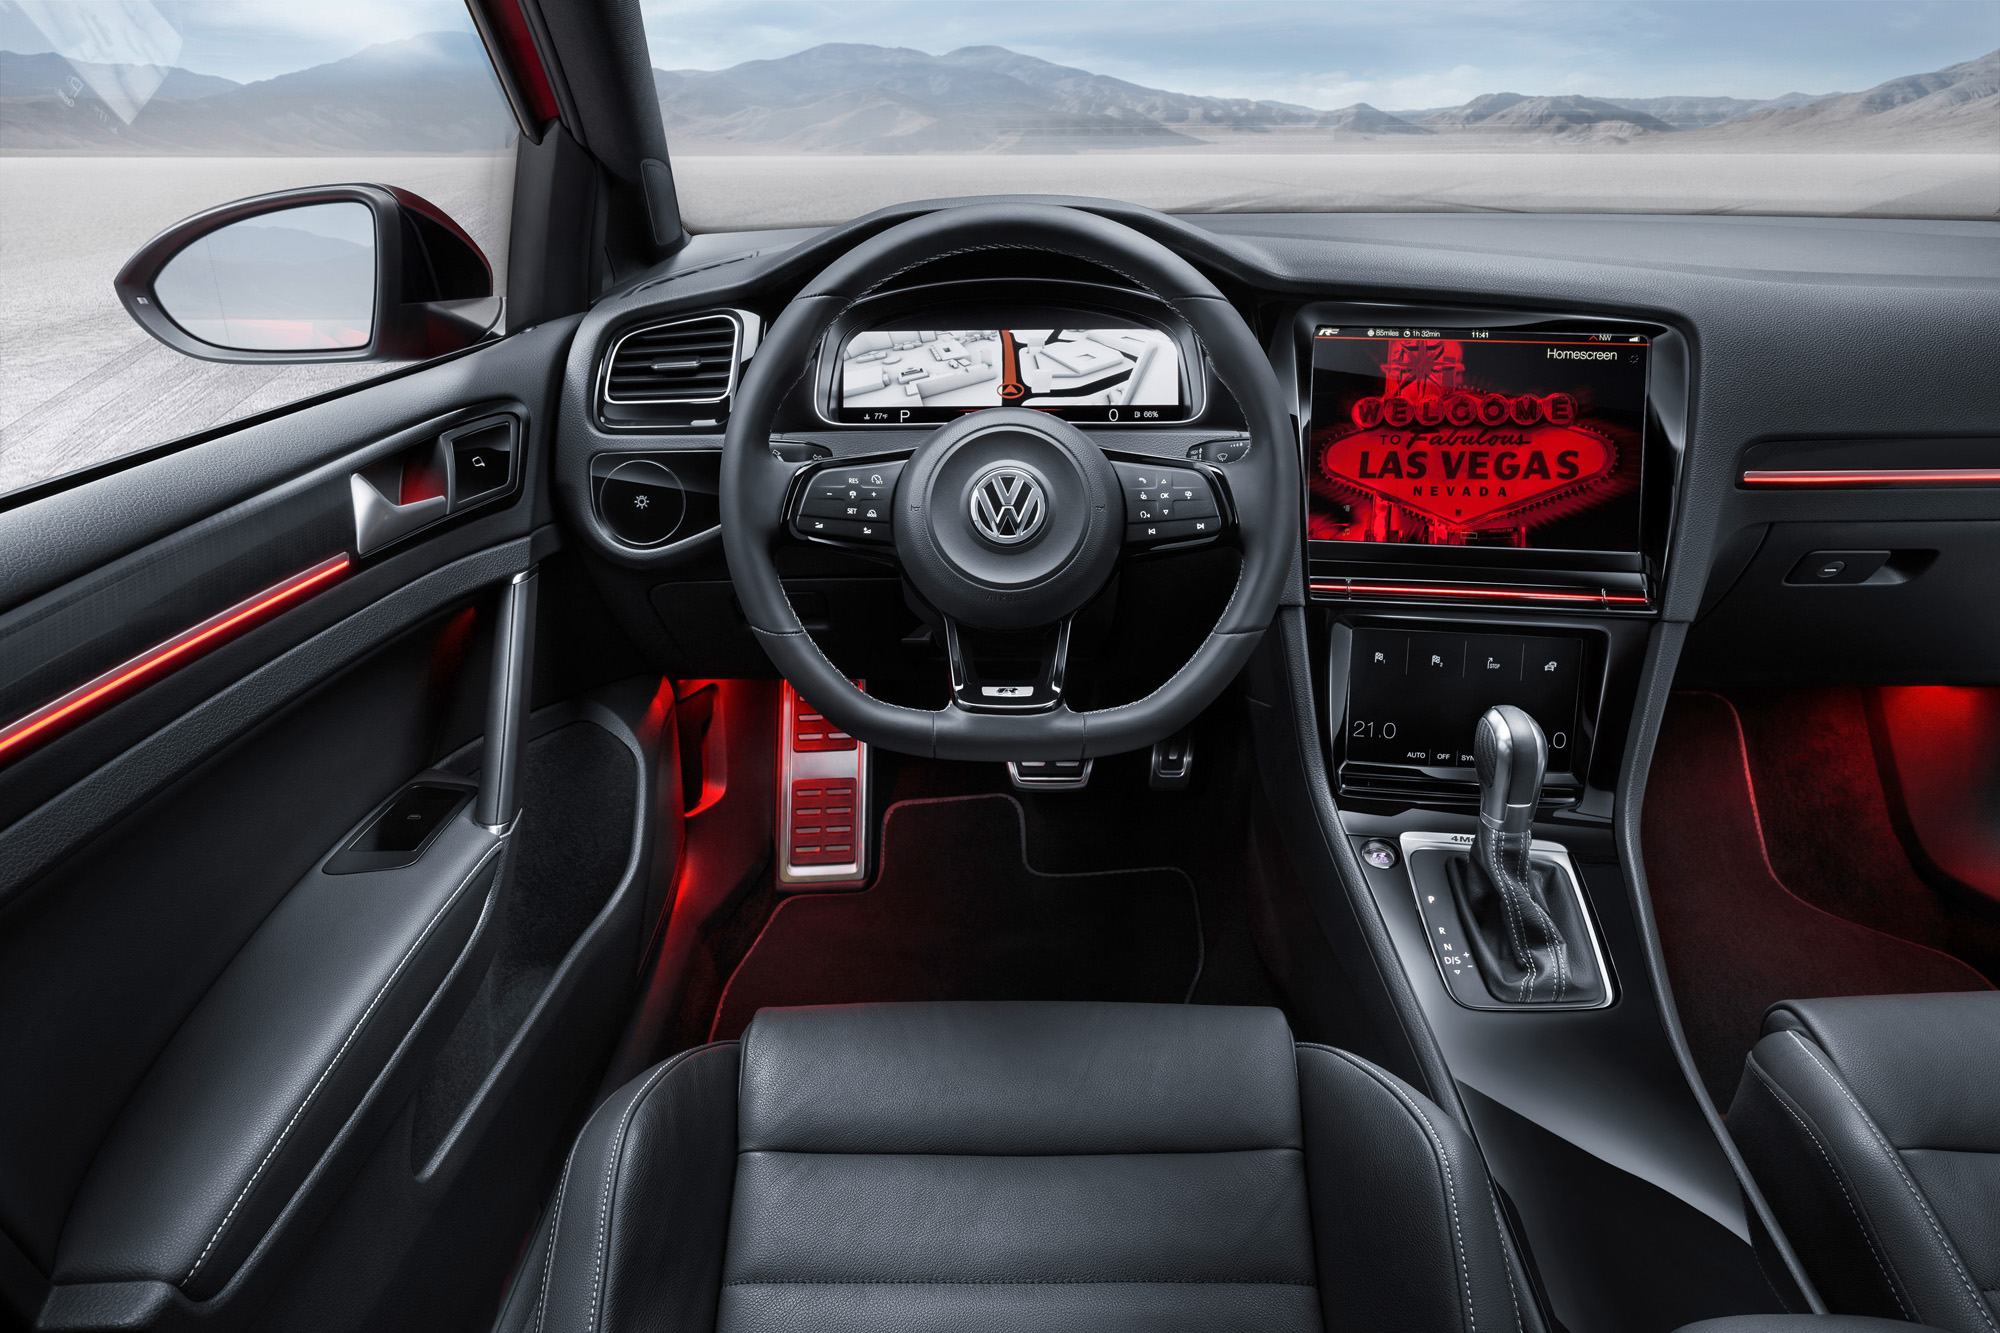 VW Golf 7 R Touch: Gestensteuerung als digitales Tuning